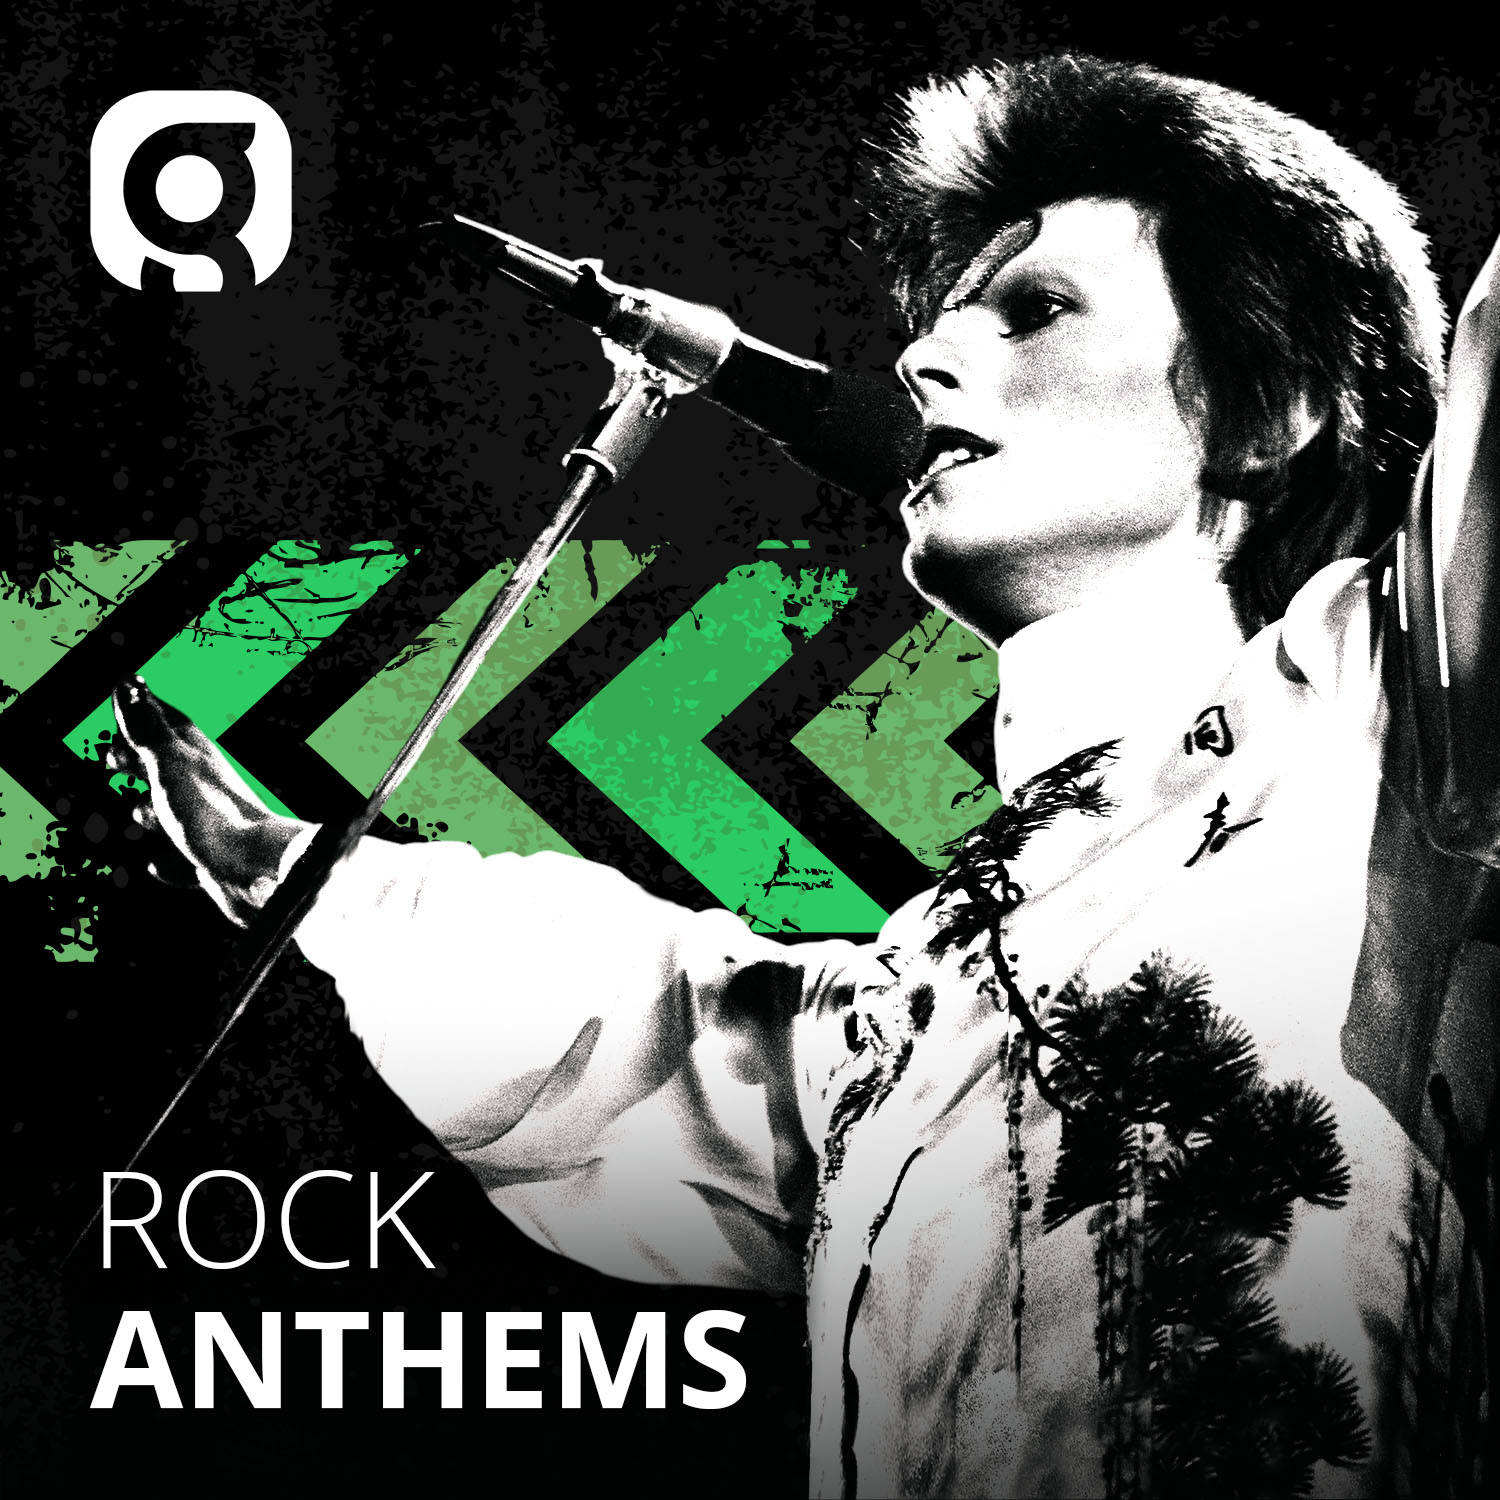 Rock Anthems image